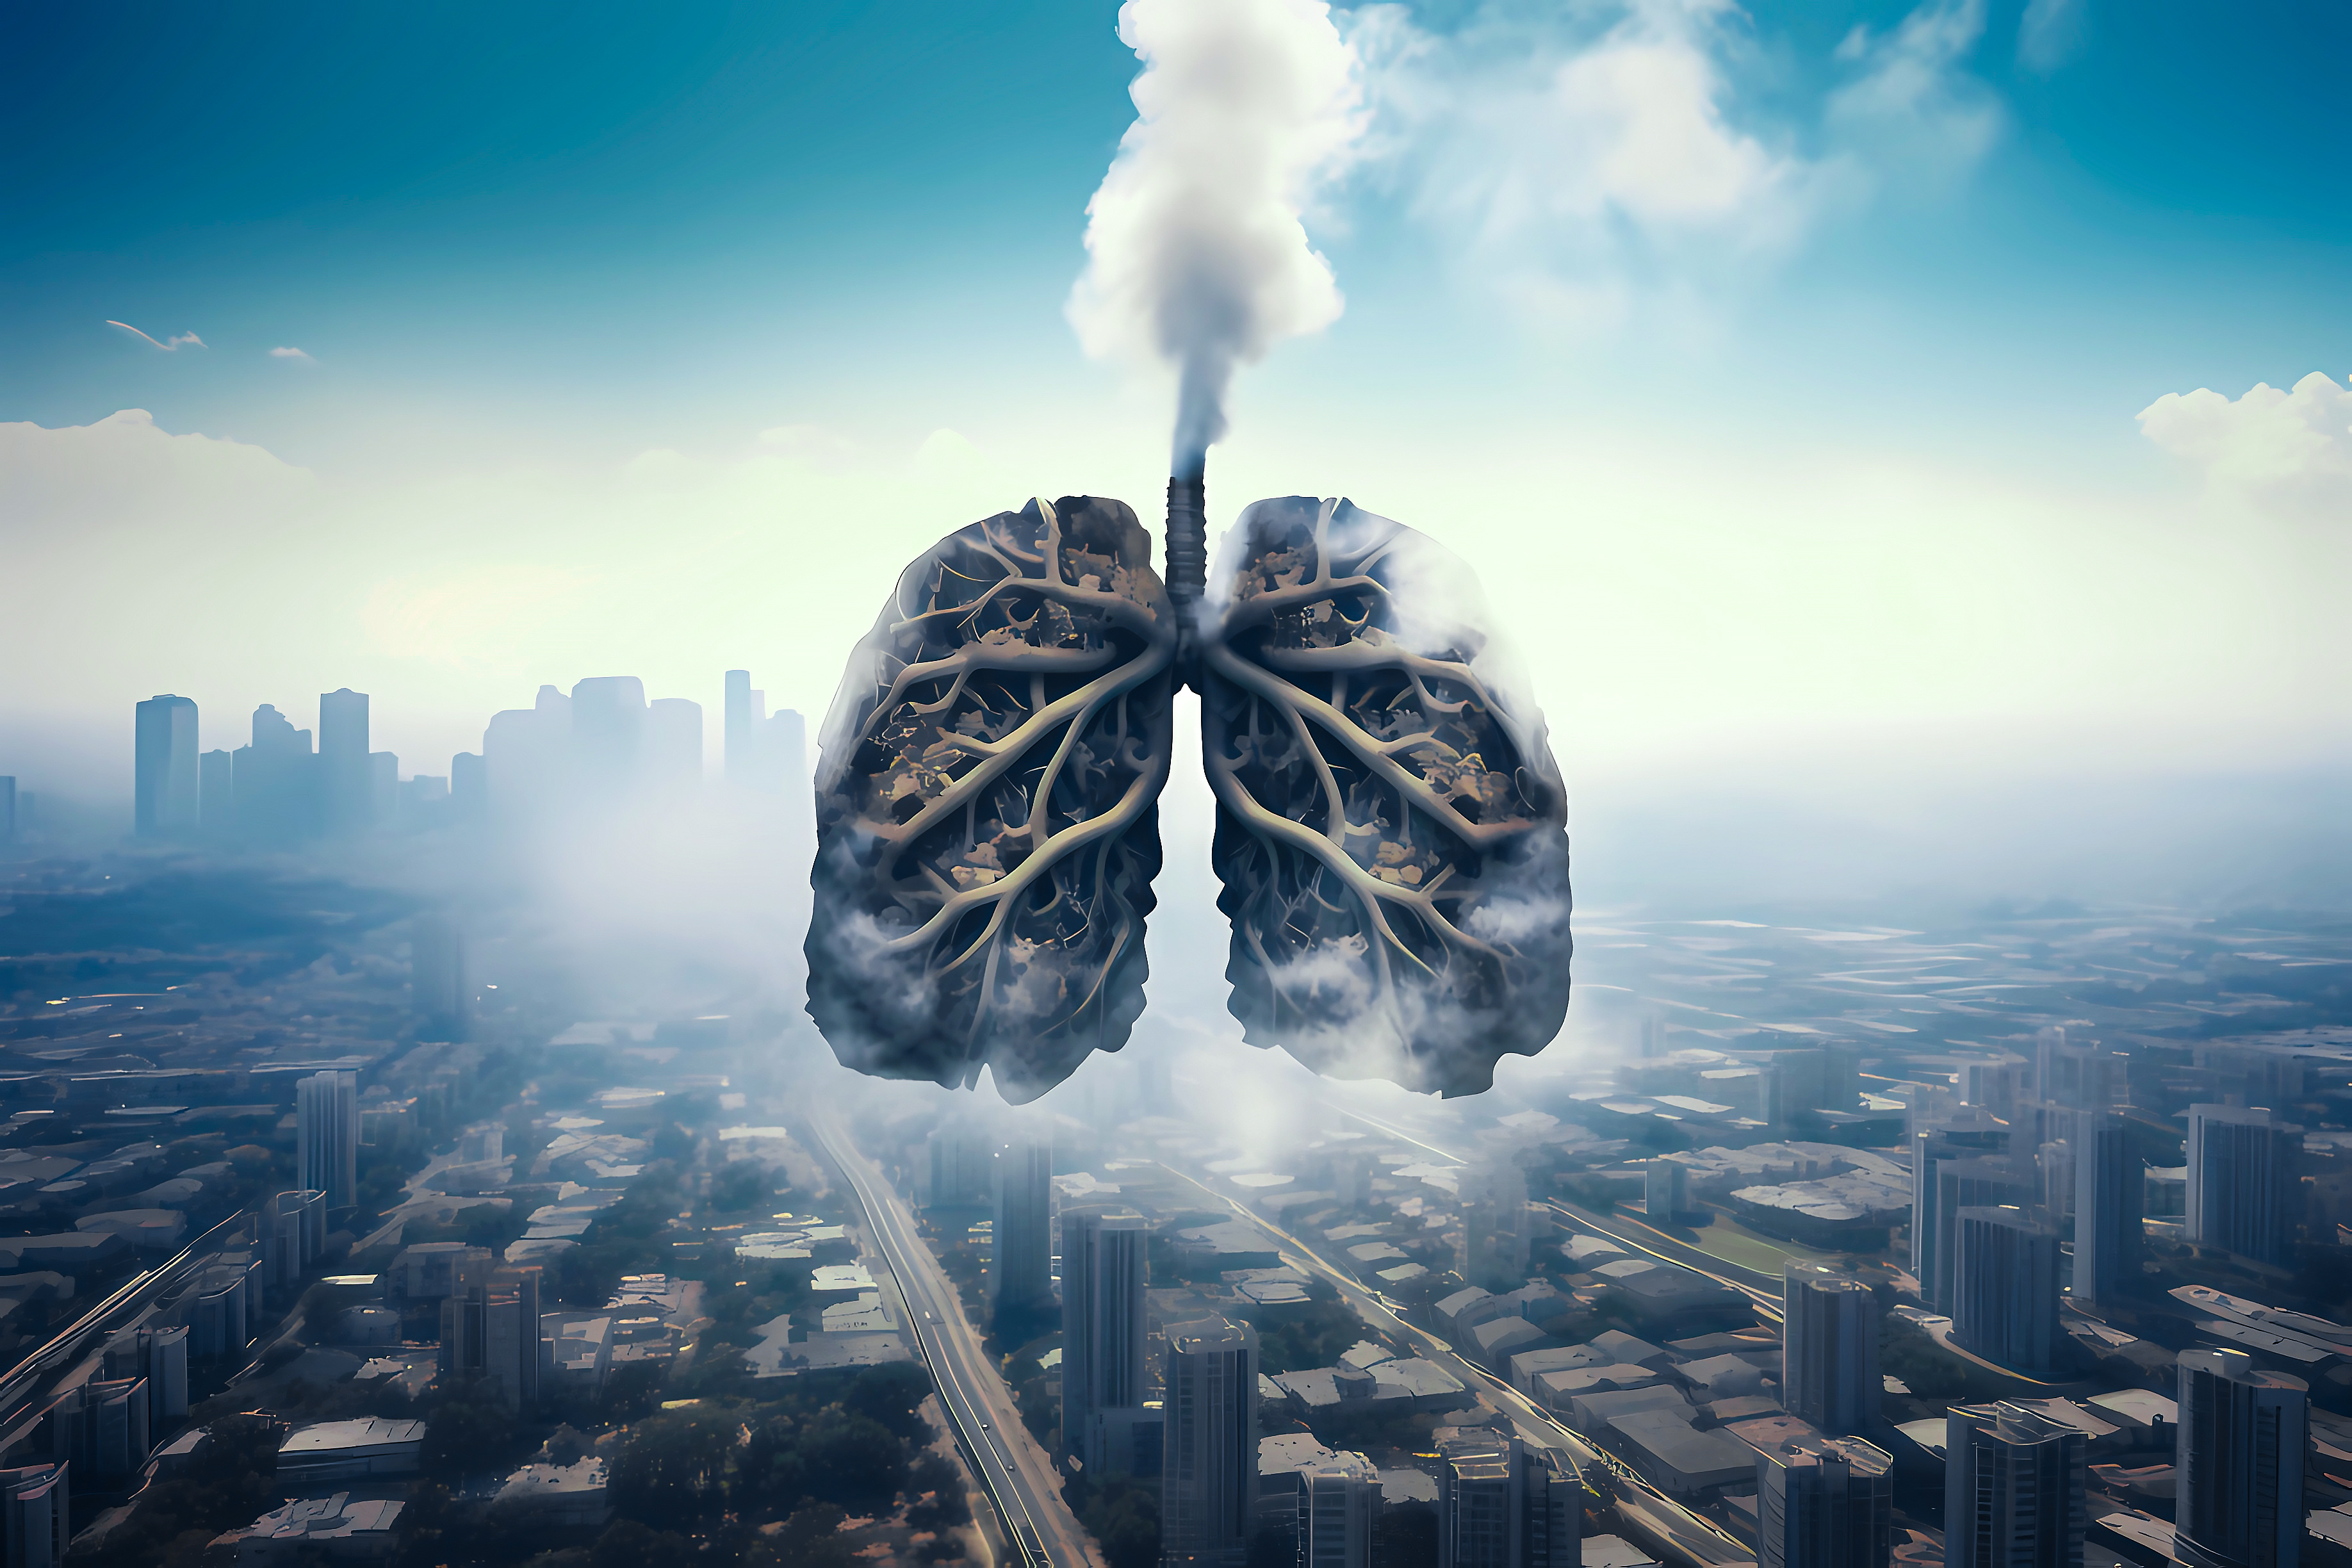 La respiration humaine émet aussi des gaz à effet de serre. © Stock - Realm, Adobe Stock